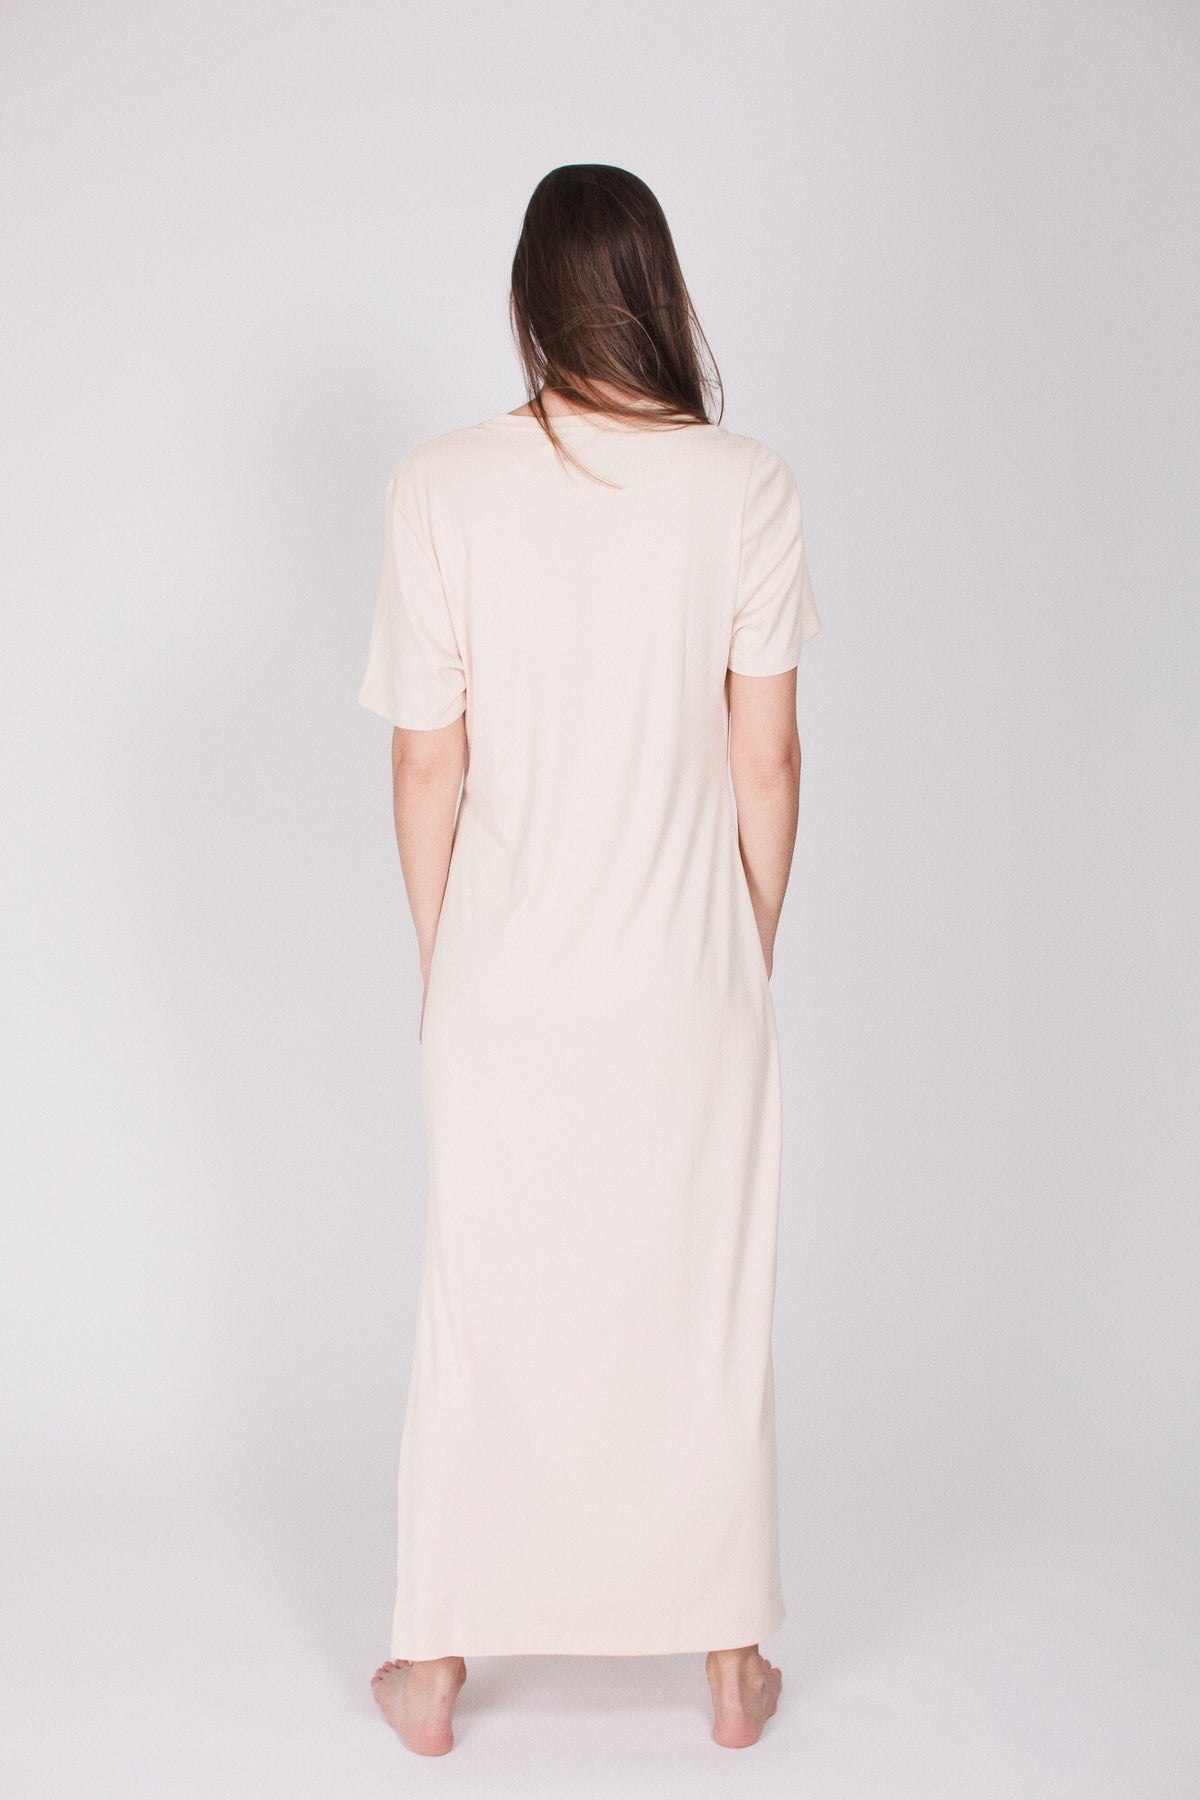 The T-dress : Tencel/Cotton - Cream - AWAN - Loungewear - VILLOID.no